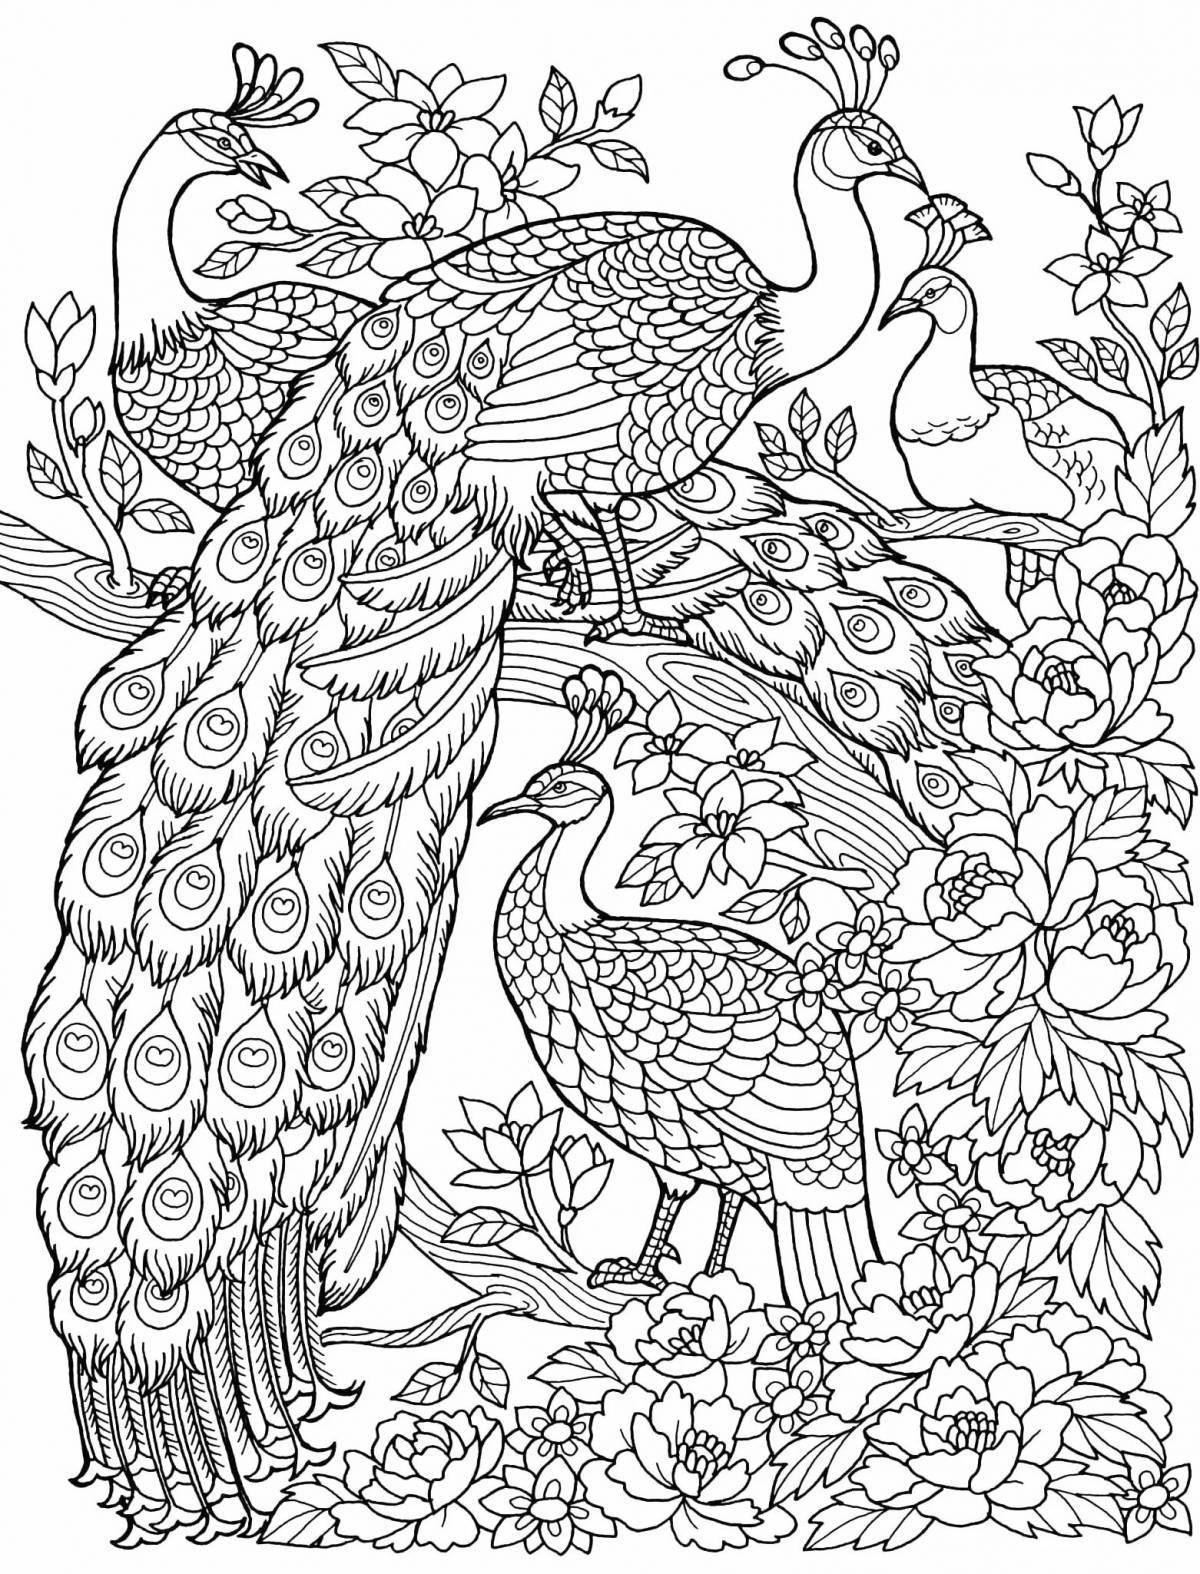 Heat bird magic anti-stress coloring book